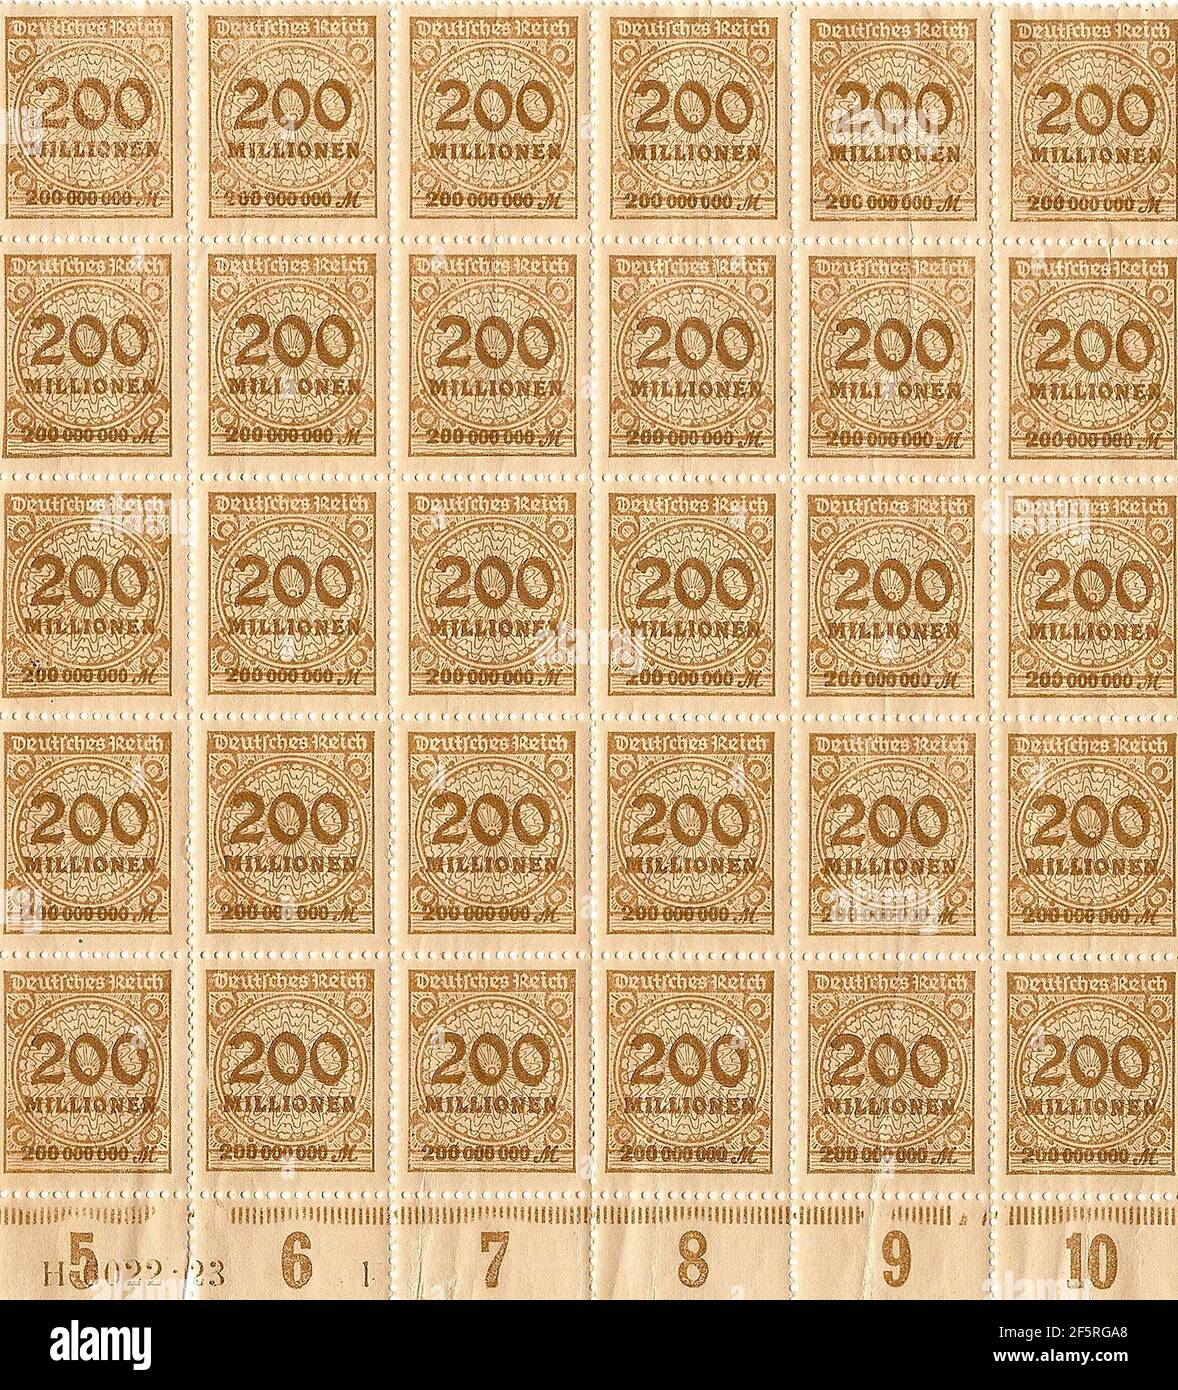 Inflationsmarken aus der Weimarer Republik der 1920-30er Jahre - Briefmarken im Wert Millionen von Deutch-Mark Stockfoto